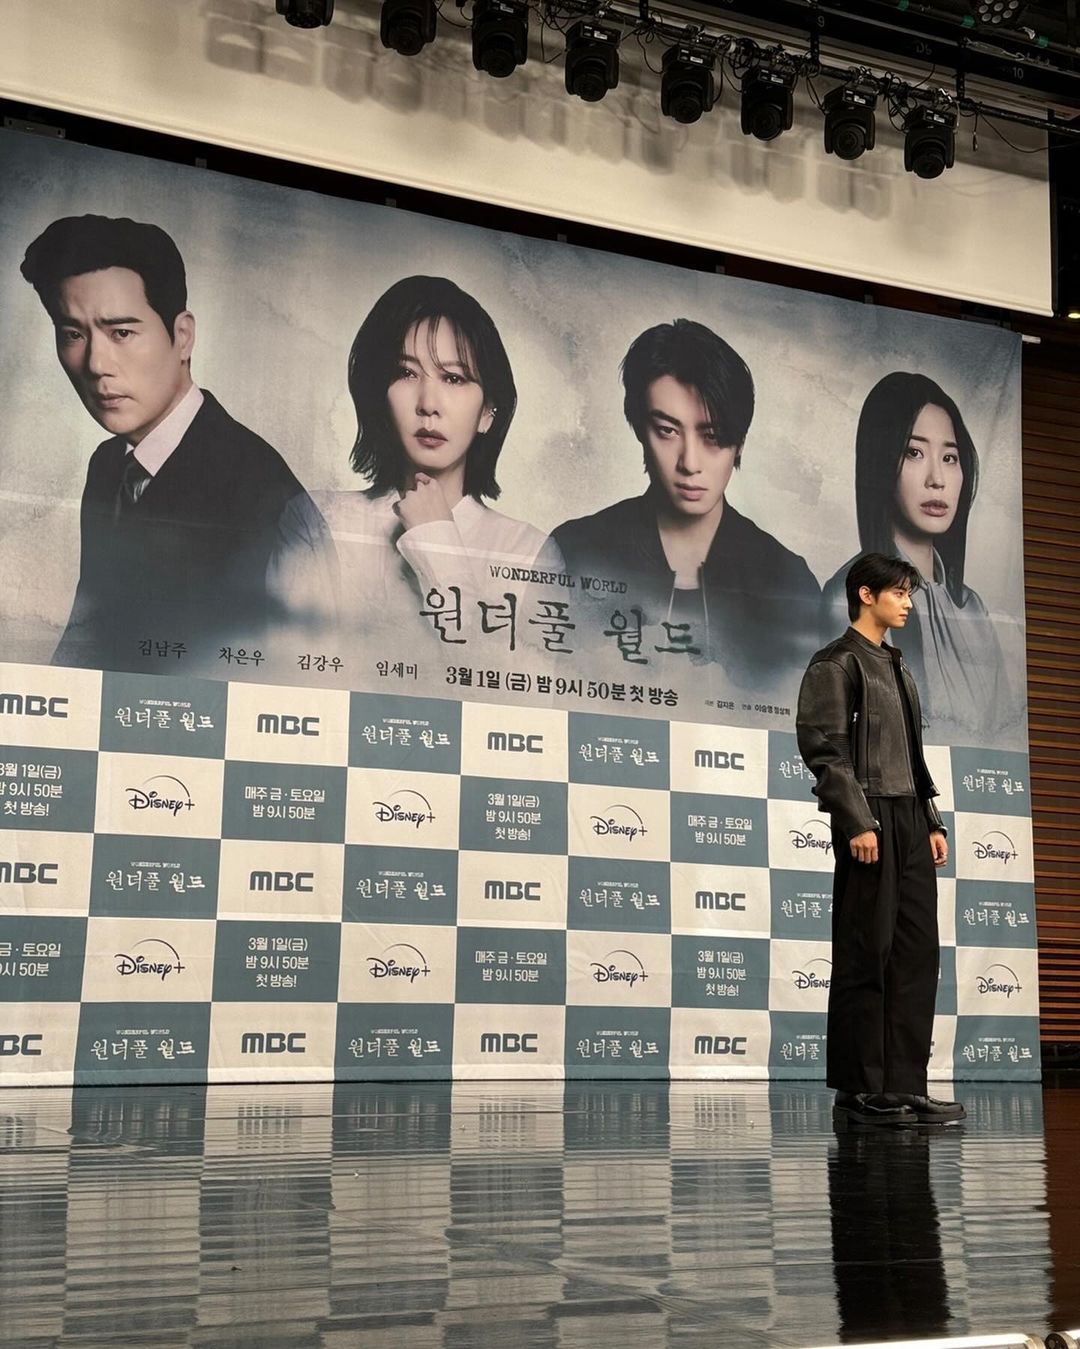 4 Fakta Cha Eun-woo sebagai Kwon Sun Yool dalam Drama Korea Wonderful World